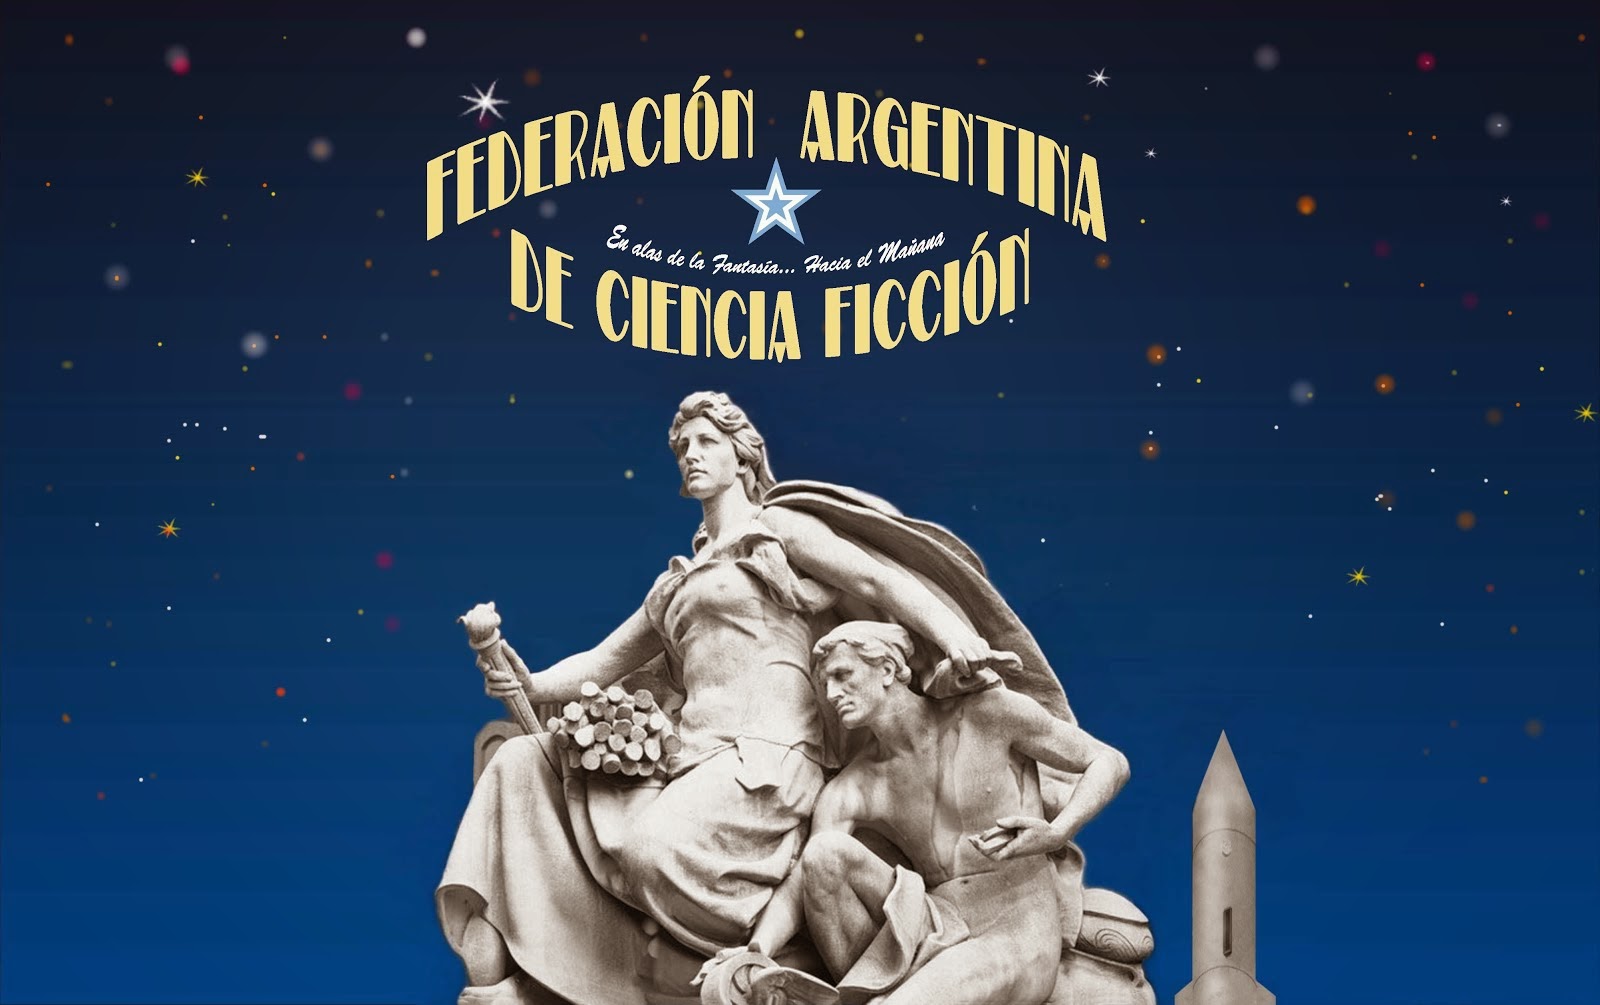 Federación Argentina de Ciencia Ficción